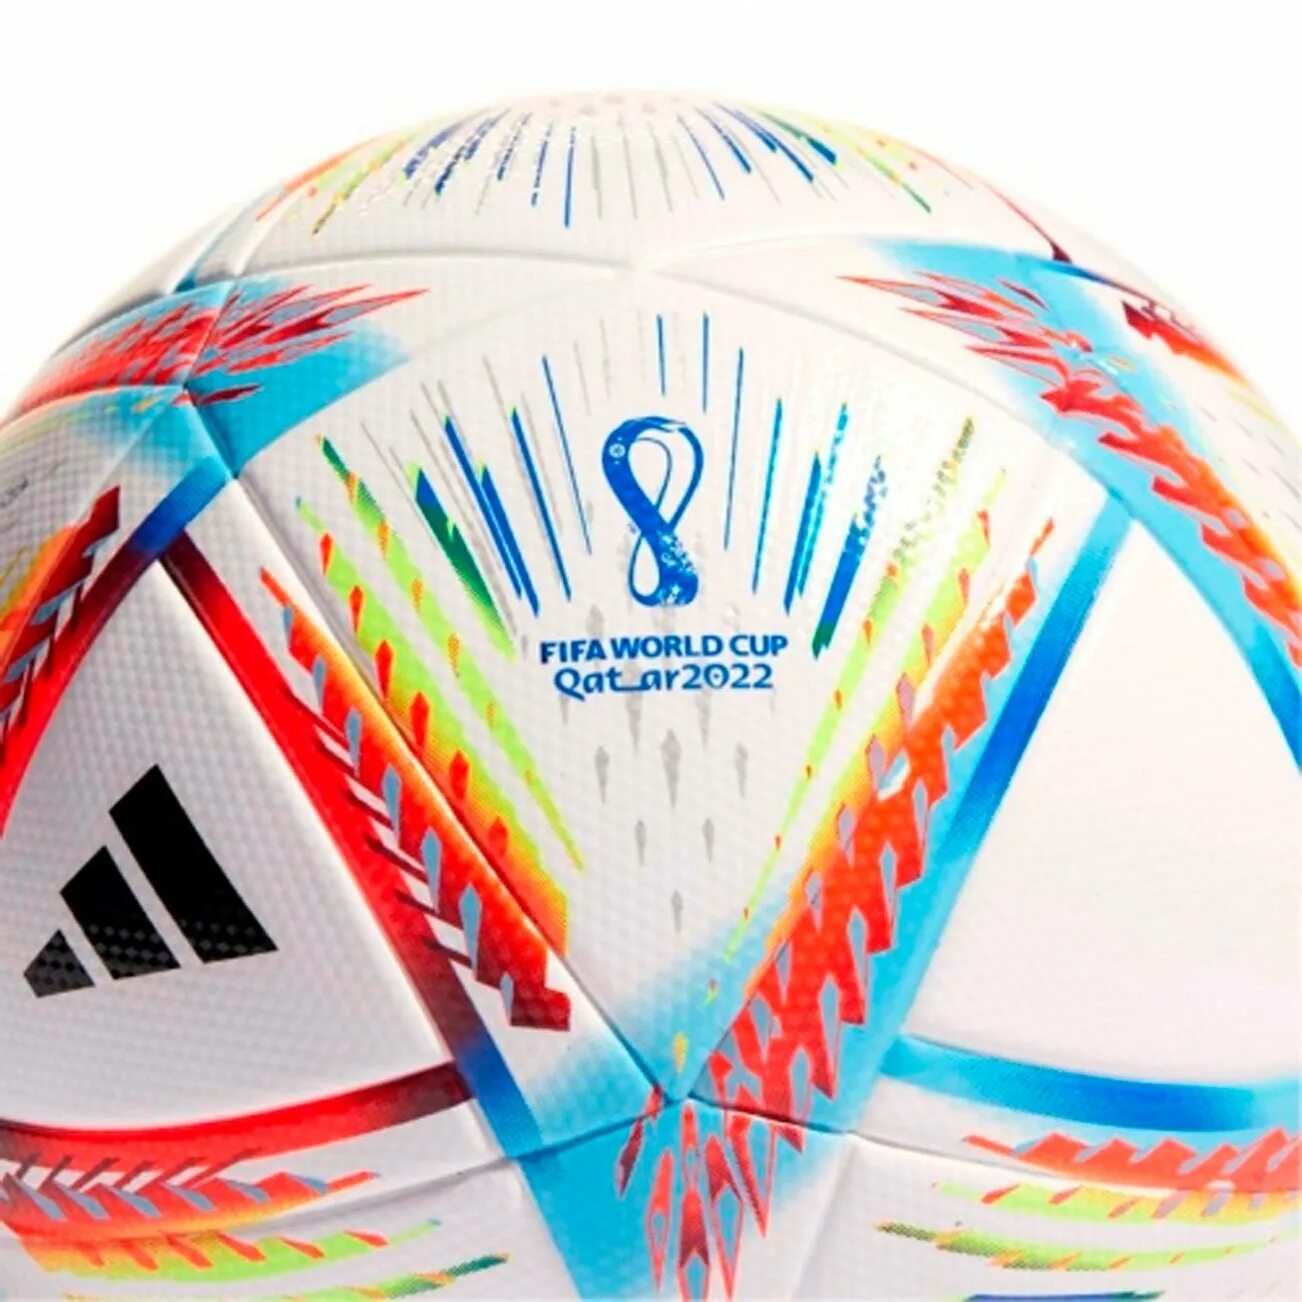 Adidas fifa. Мяч adidas Qatar 2022 al Rihla. Мяч adidas FIFA World Cup 2022 al Rihla. Adidas World Cup 2022 Ball. Мяч adidas Rihla h7783.